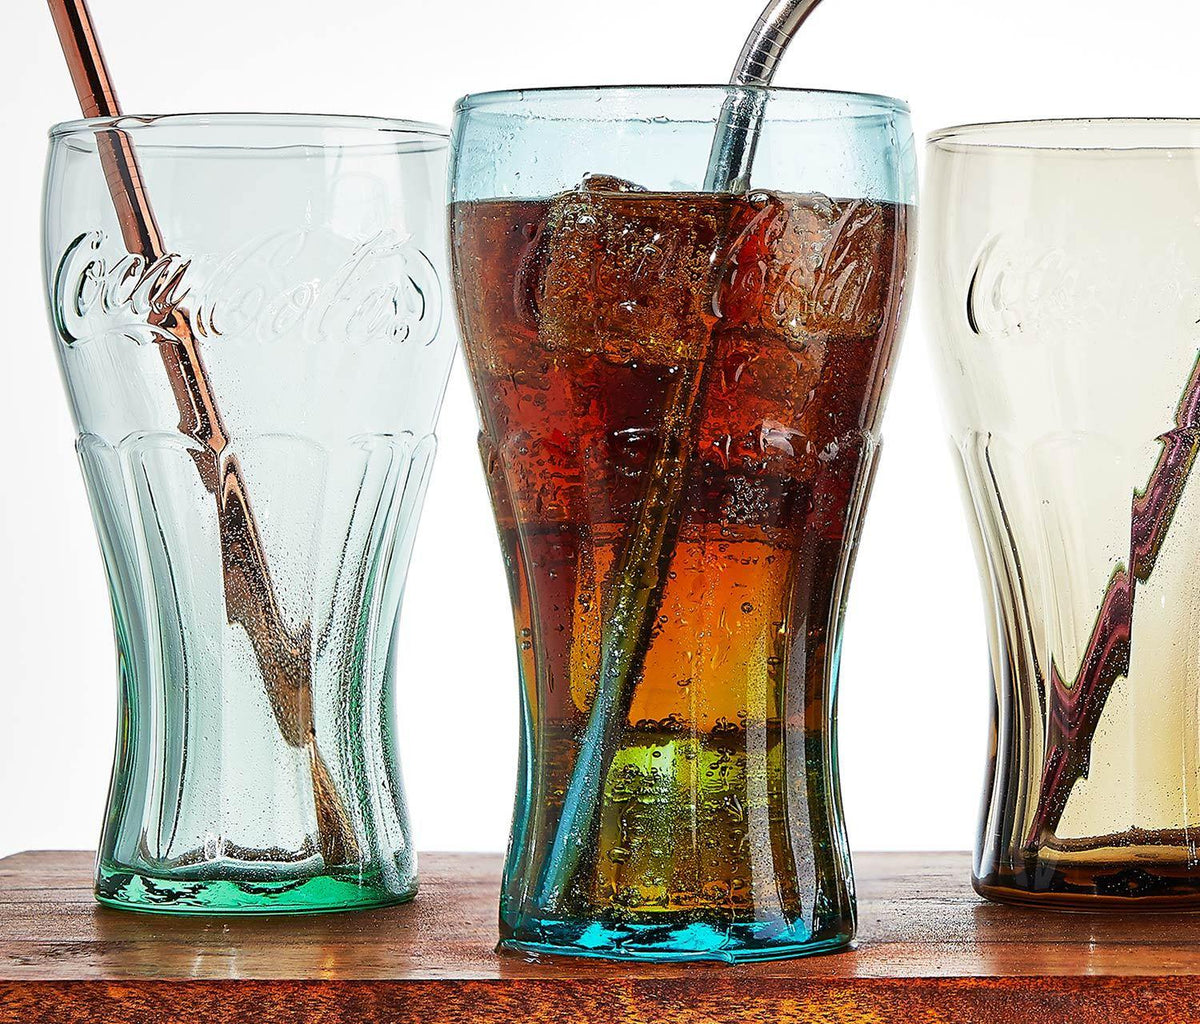 These Coca Cola Glasses : r/nostalgia